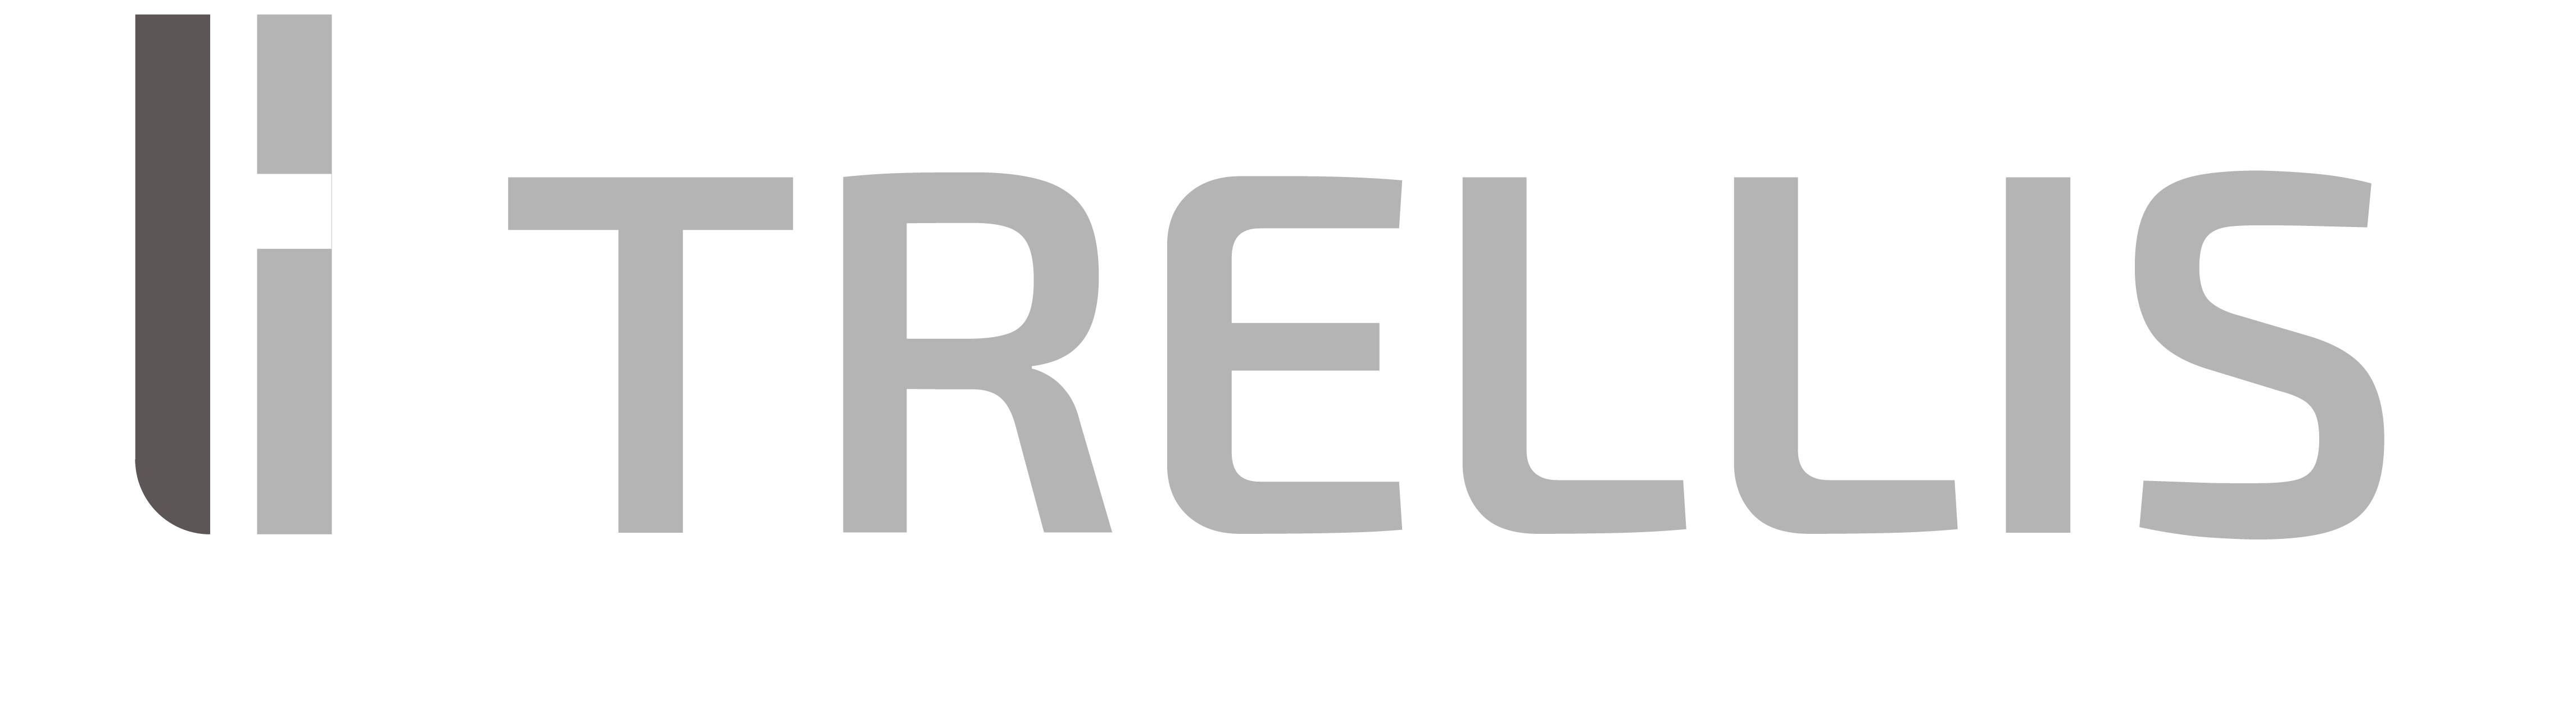 20220929 Trellis - logo inverse v2 TL crop